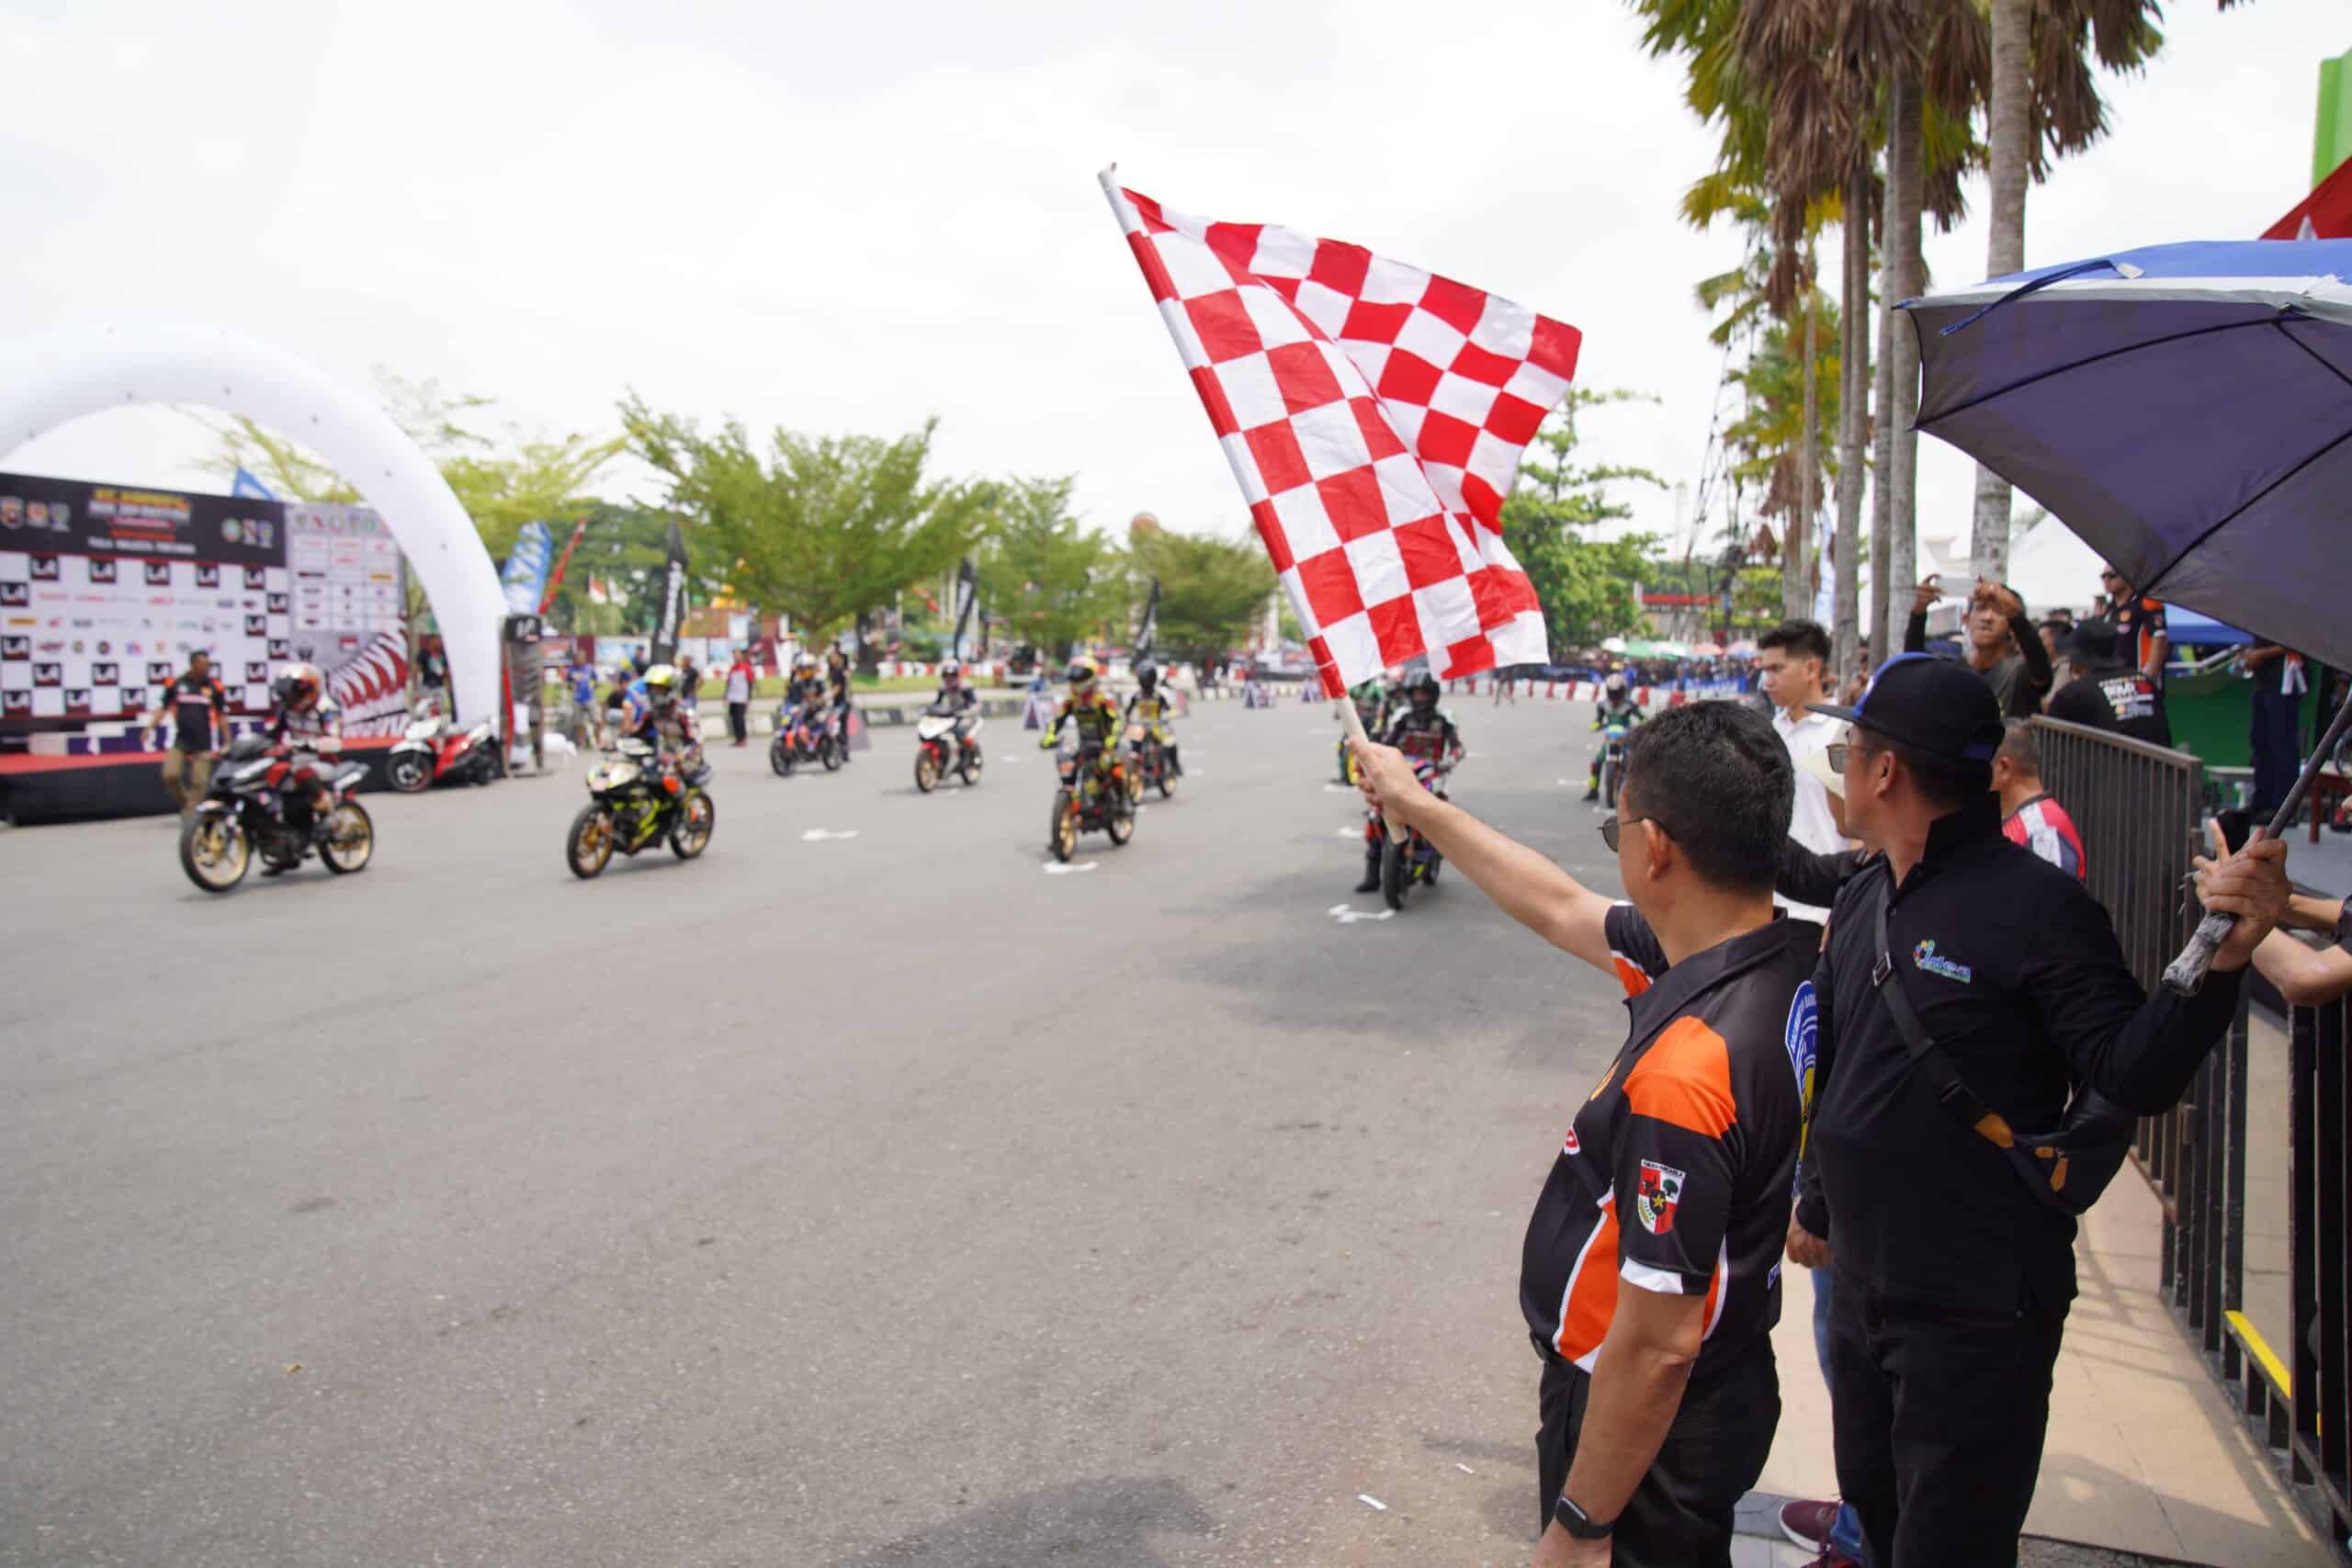 Wali Kota Pontianak, Edi Rusdi Kamtono mengibarkan bendera start menandai dimulainya Kejurprov Balap Motor Seri IV di Sirkuit Stadion SSA. (Foto: Prokopim Pontianak)